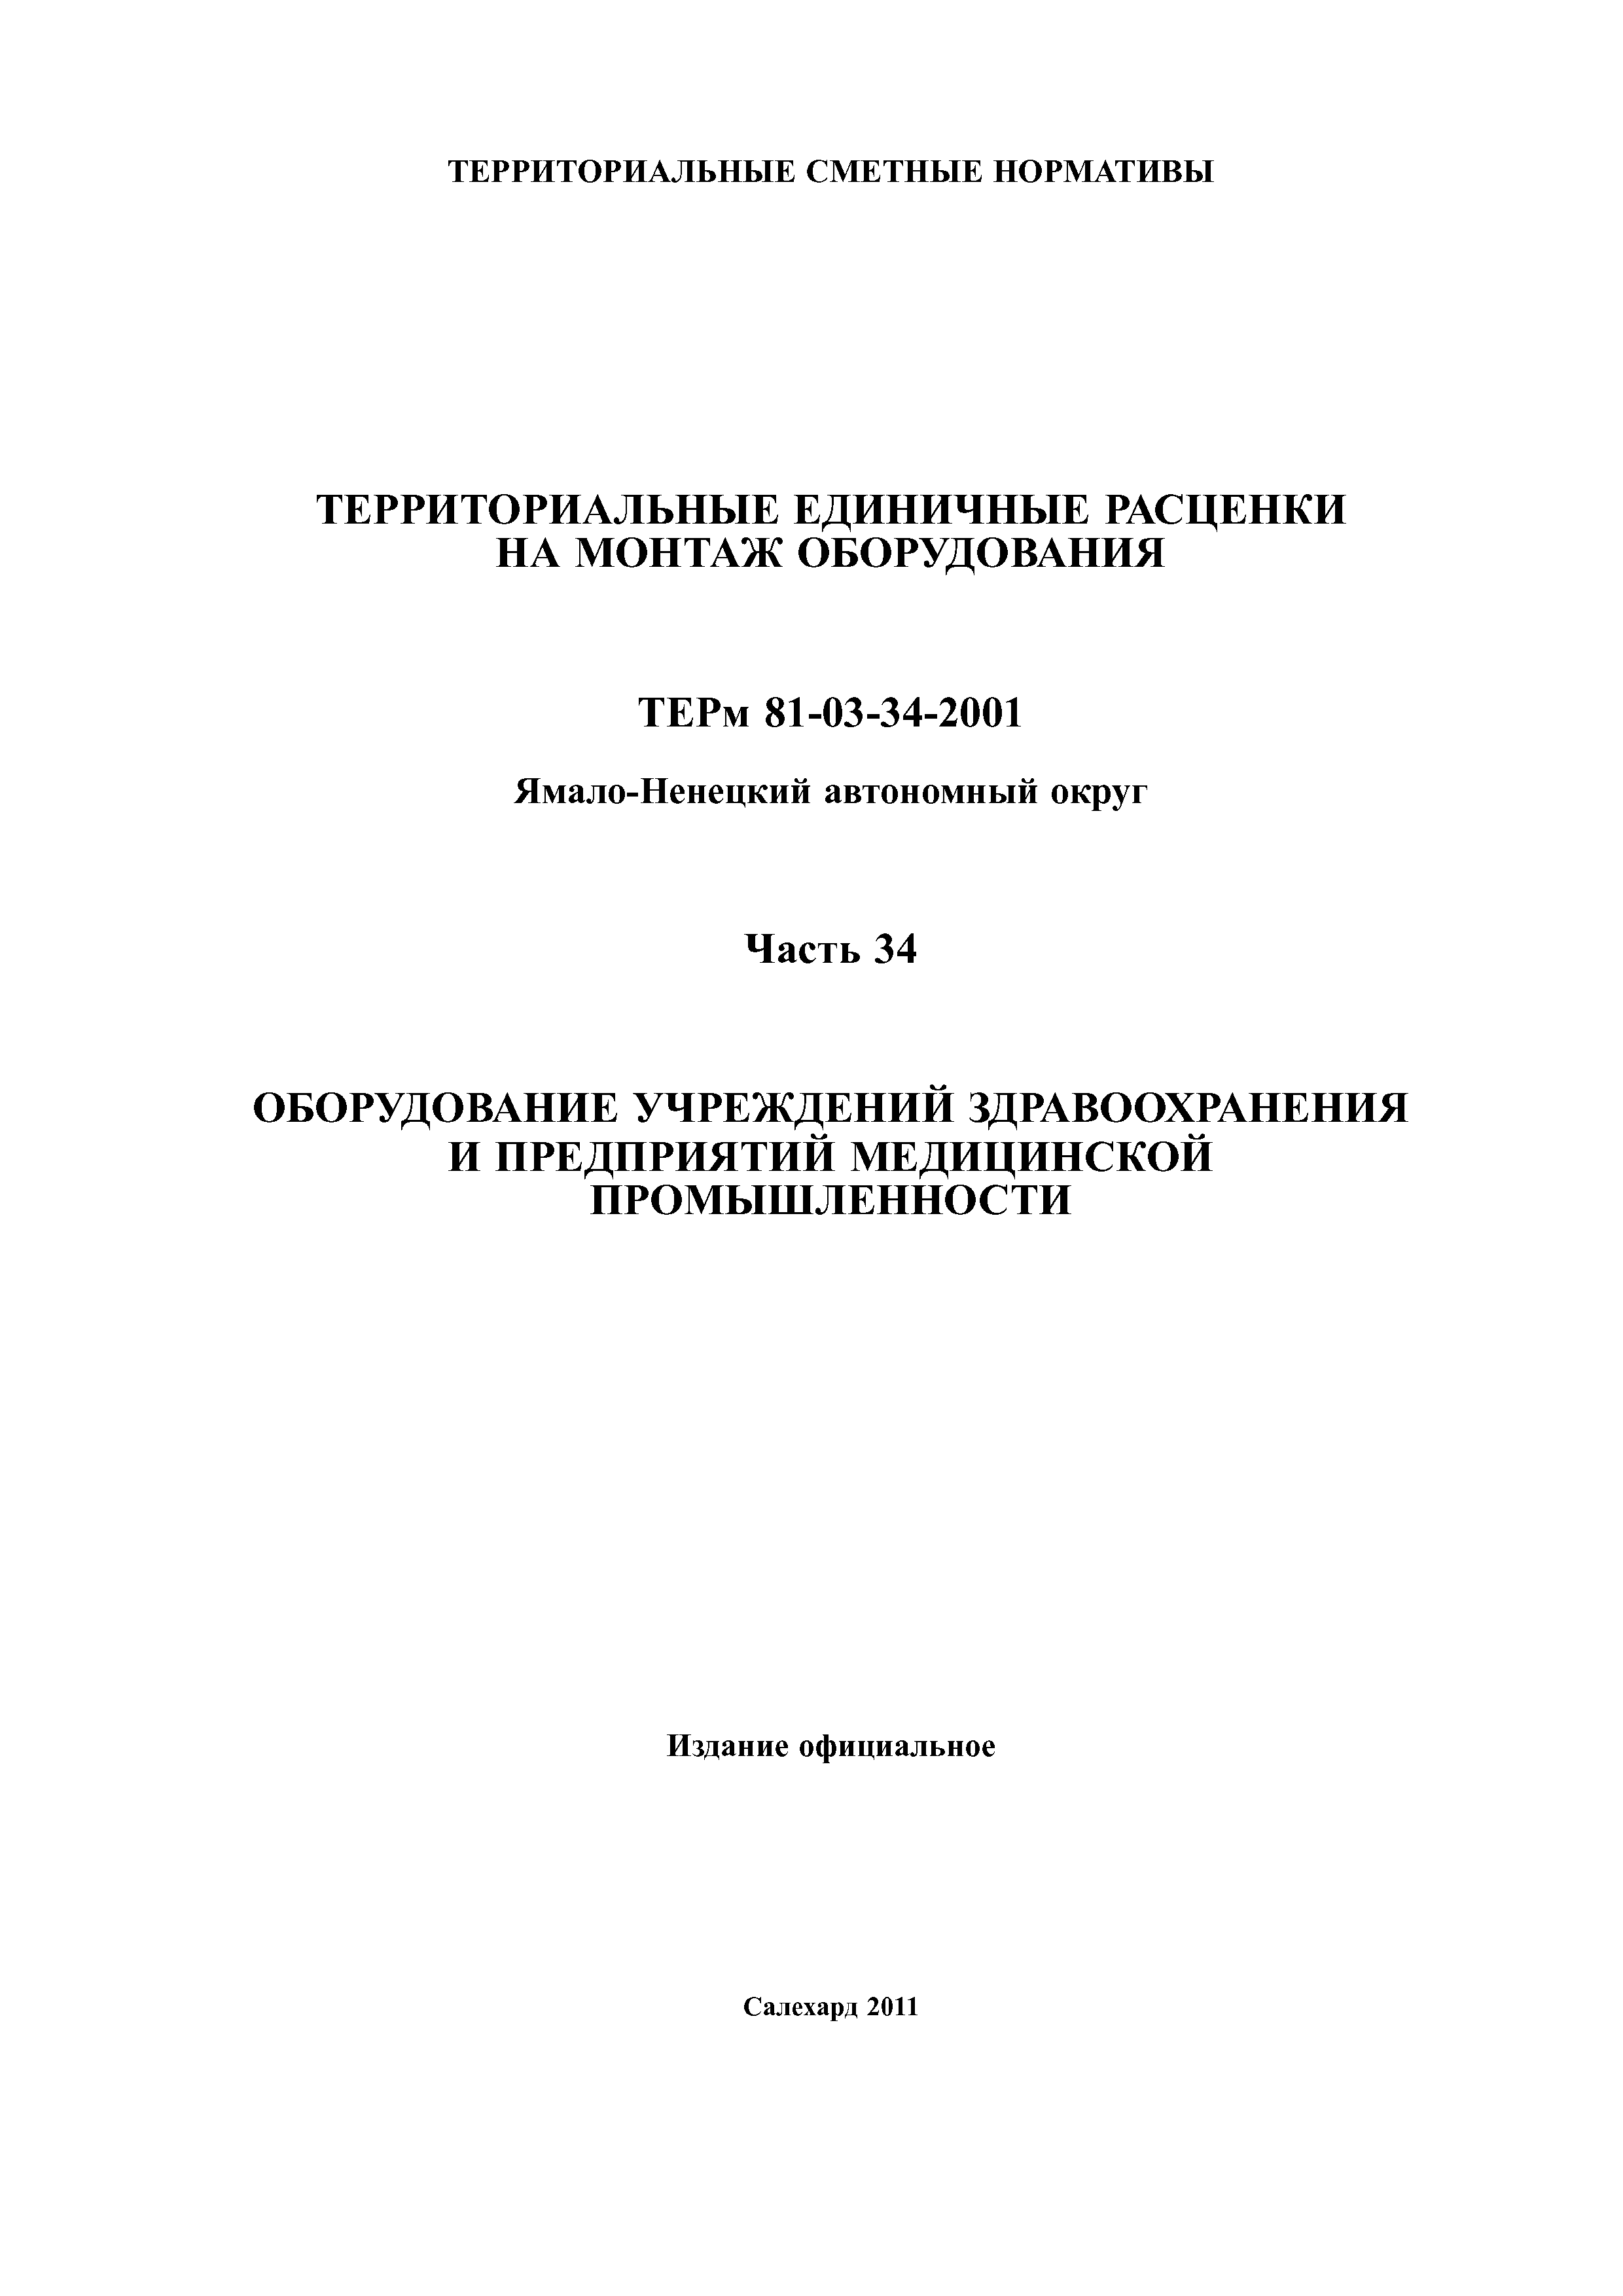 ТЕРм Ямало-Ненецкий автономный округ 34-2001